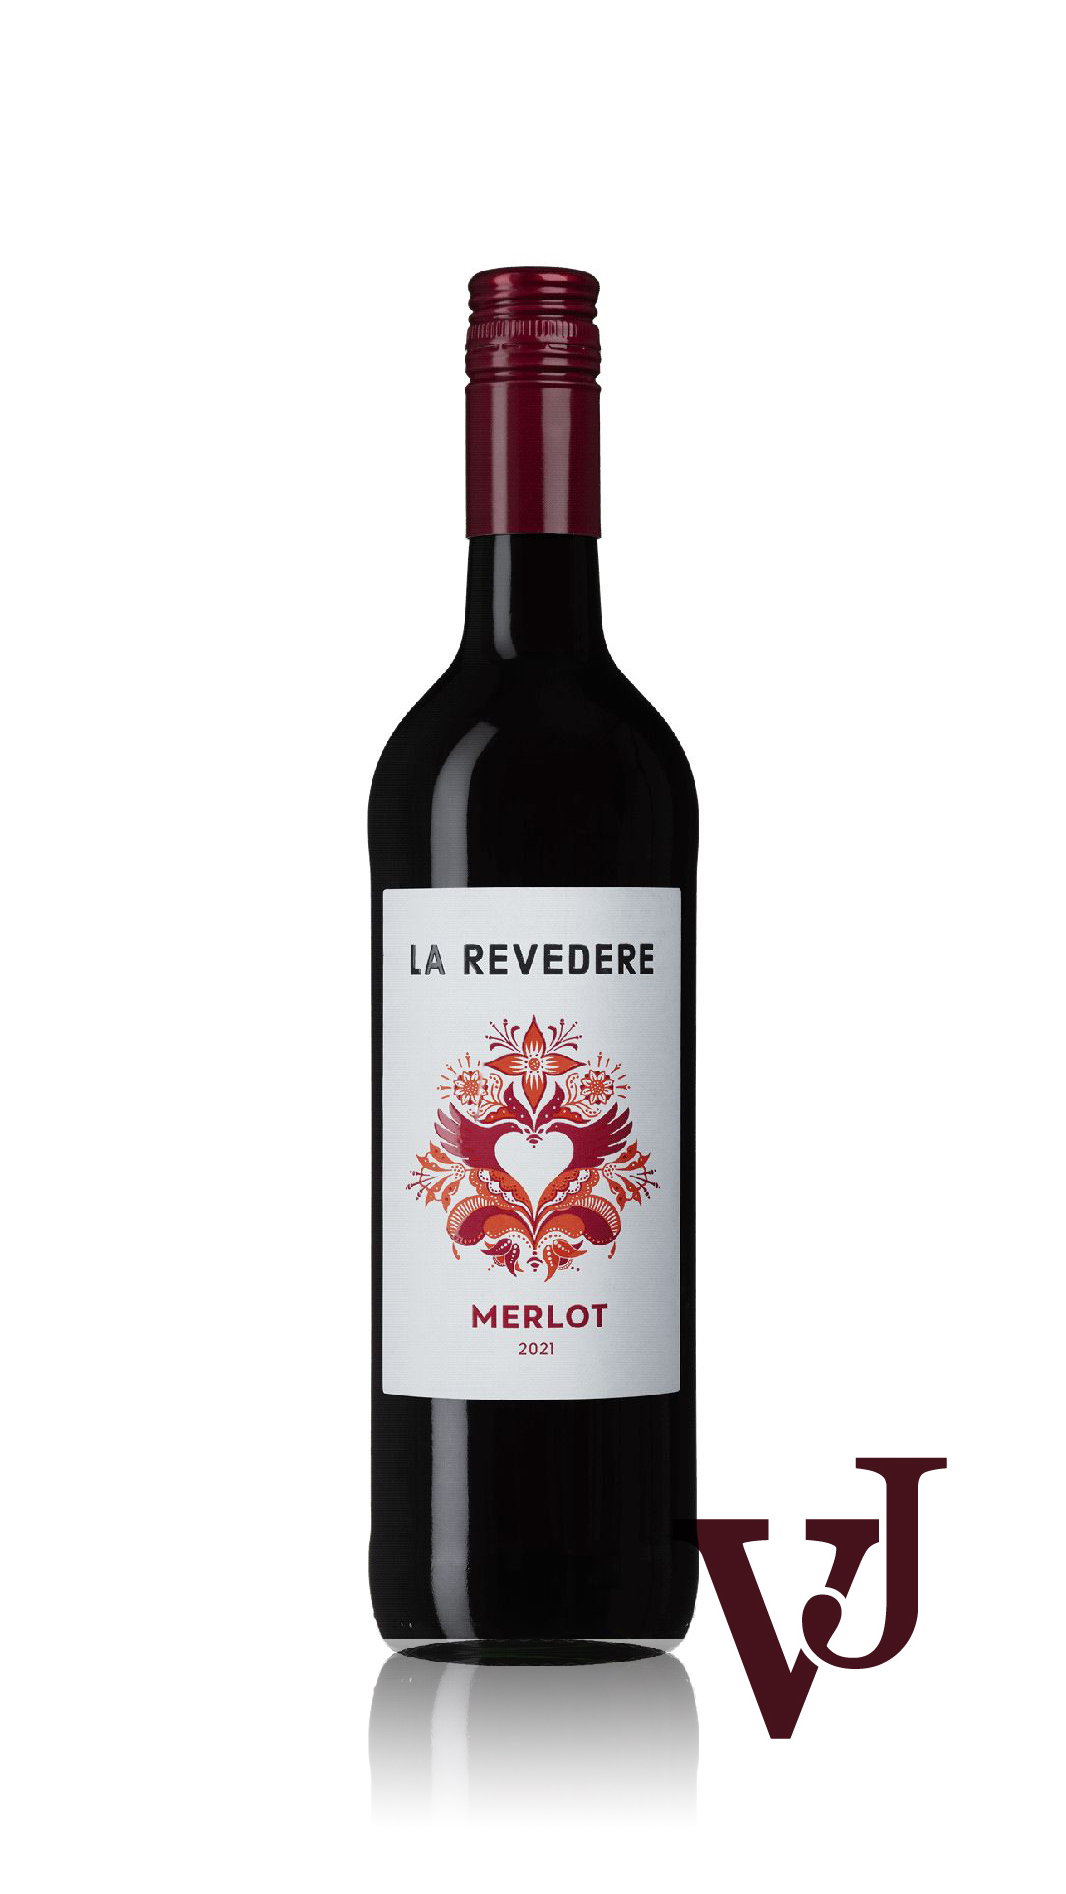 Rött Vin - La Revedere Merlot artikel nummer 262001 från producenten Altia från området Rumänien